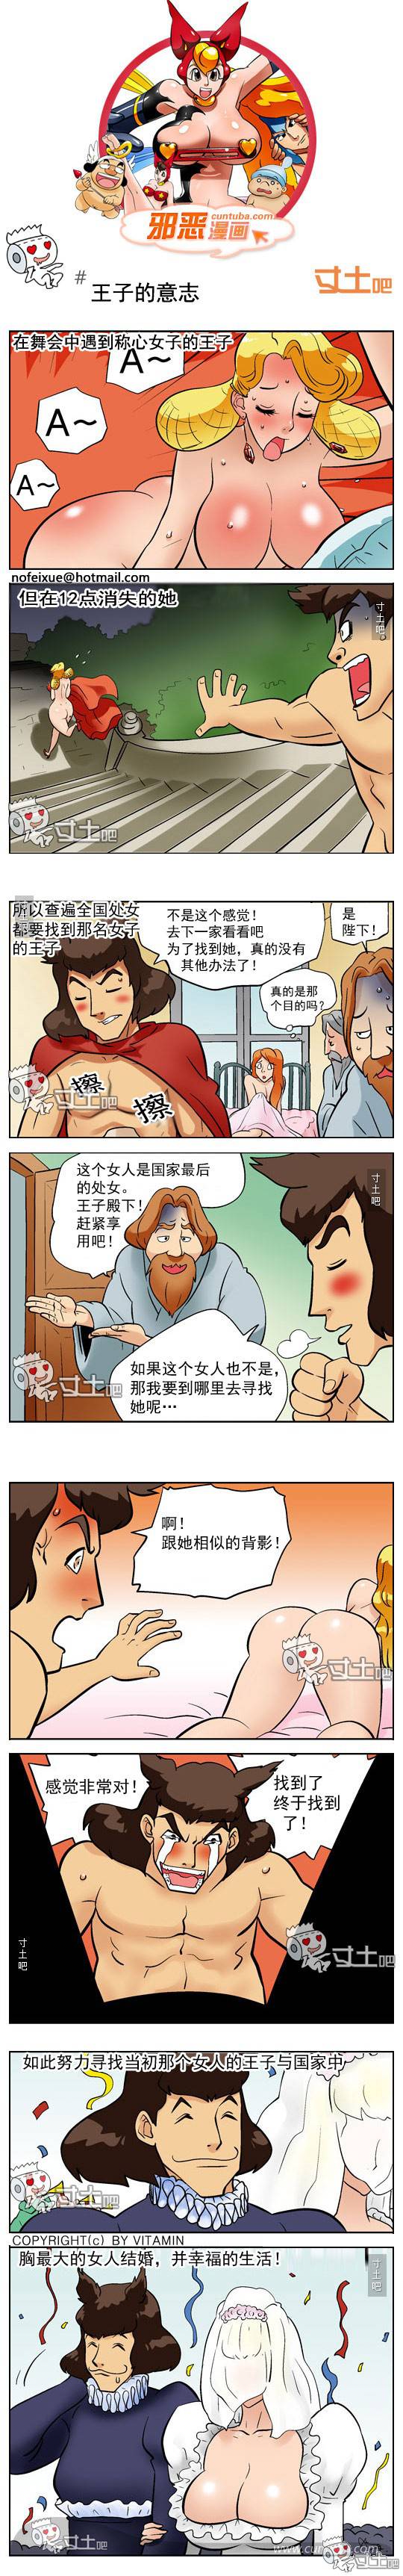 邪恶漫画爆笑囧图第262刊：模拟的姿势